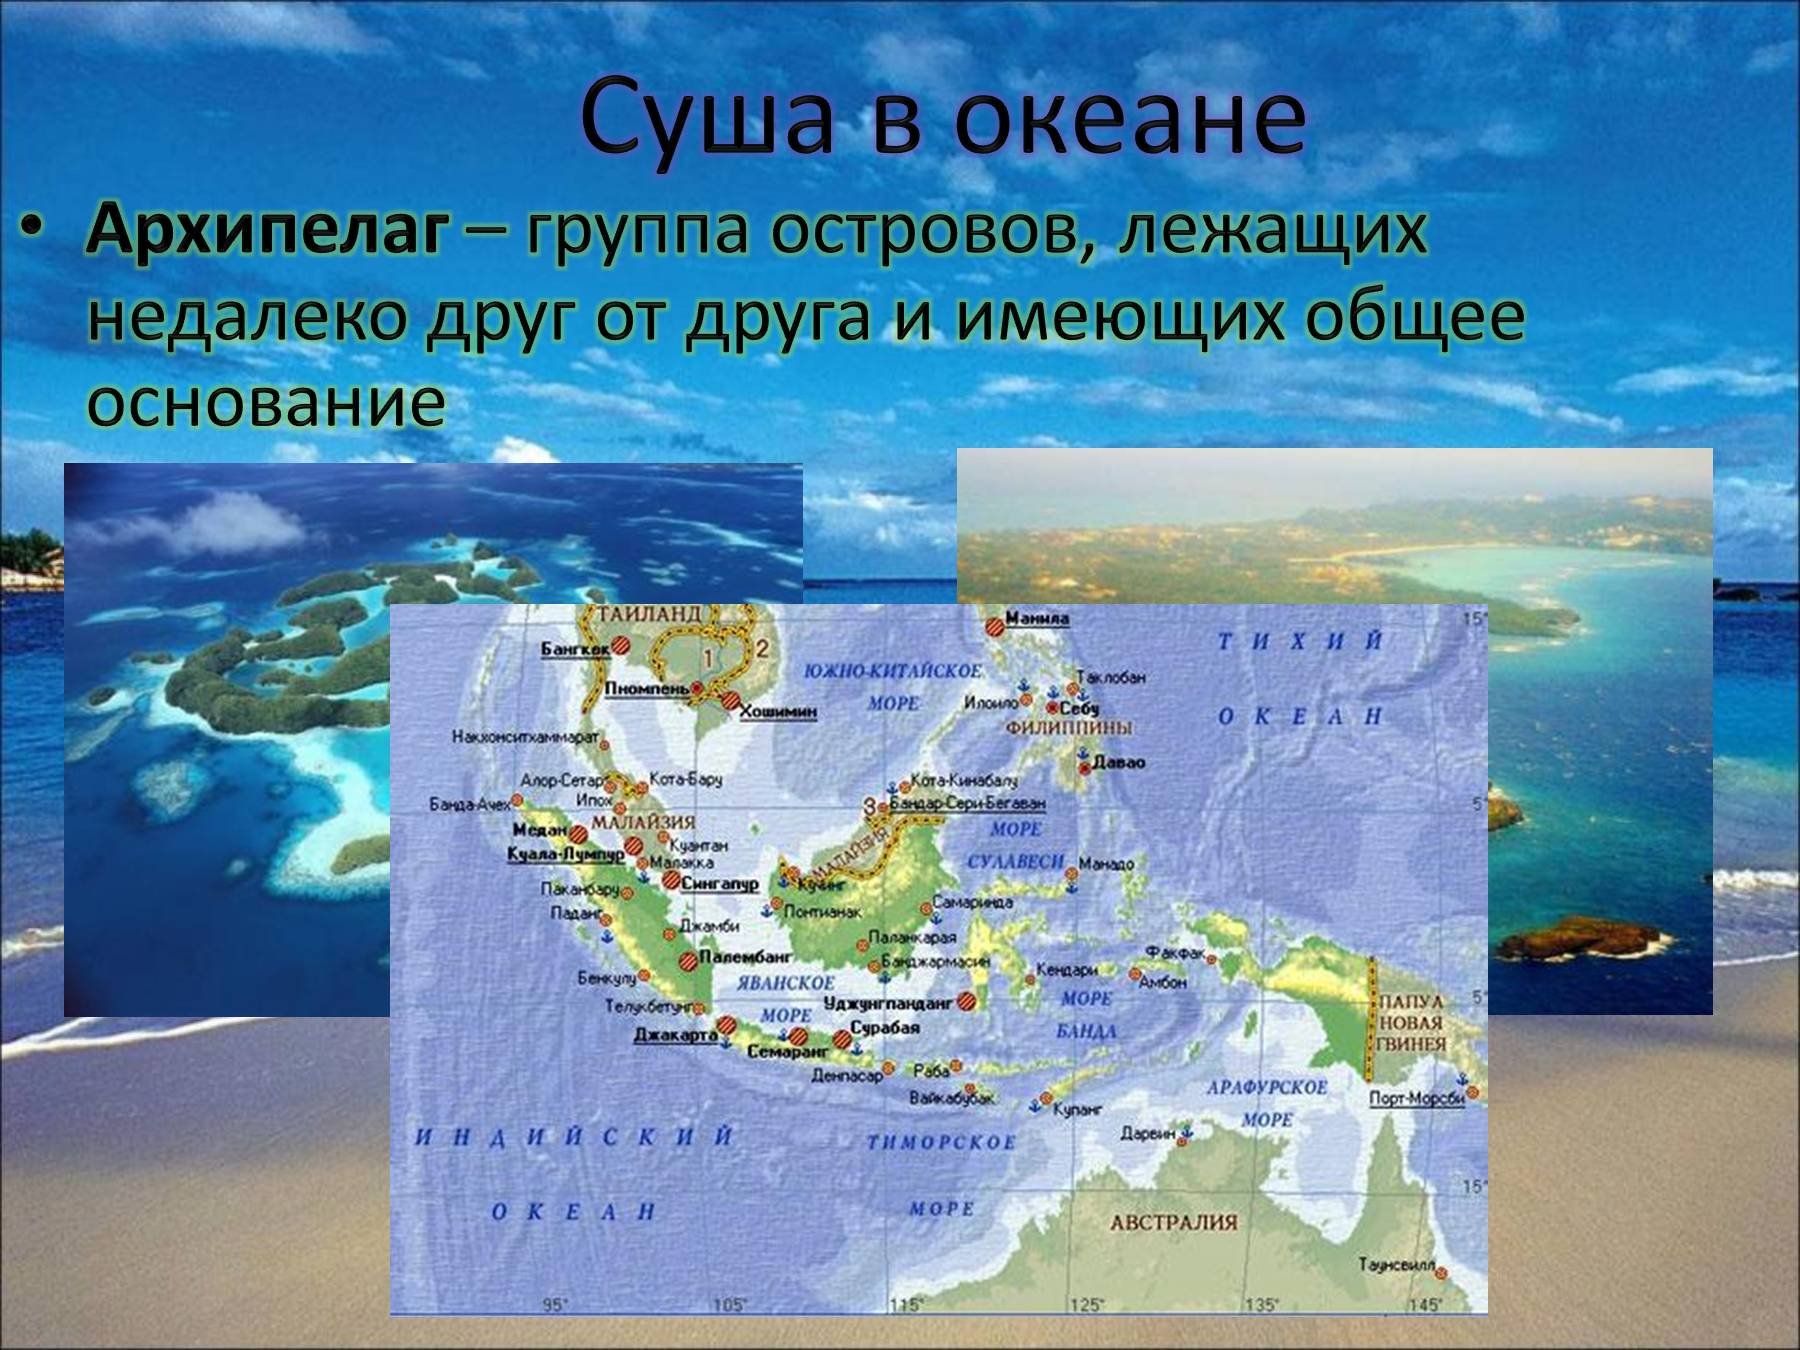 Название частей мирового океана. Острова архипелаги. Самые крупные архипелаги на карте. Архипелаги названия. Архипелаги мирового океана.